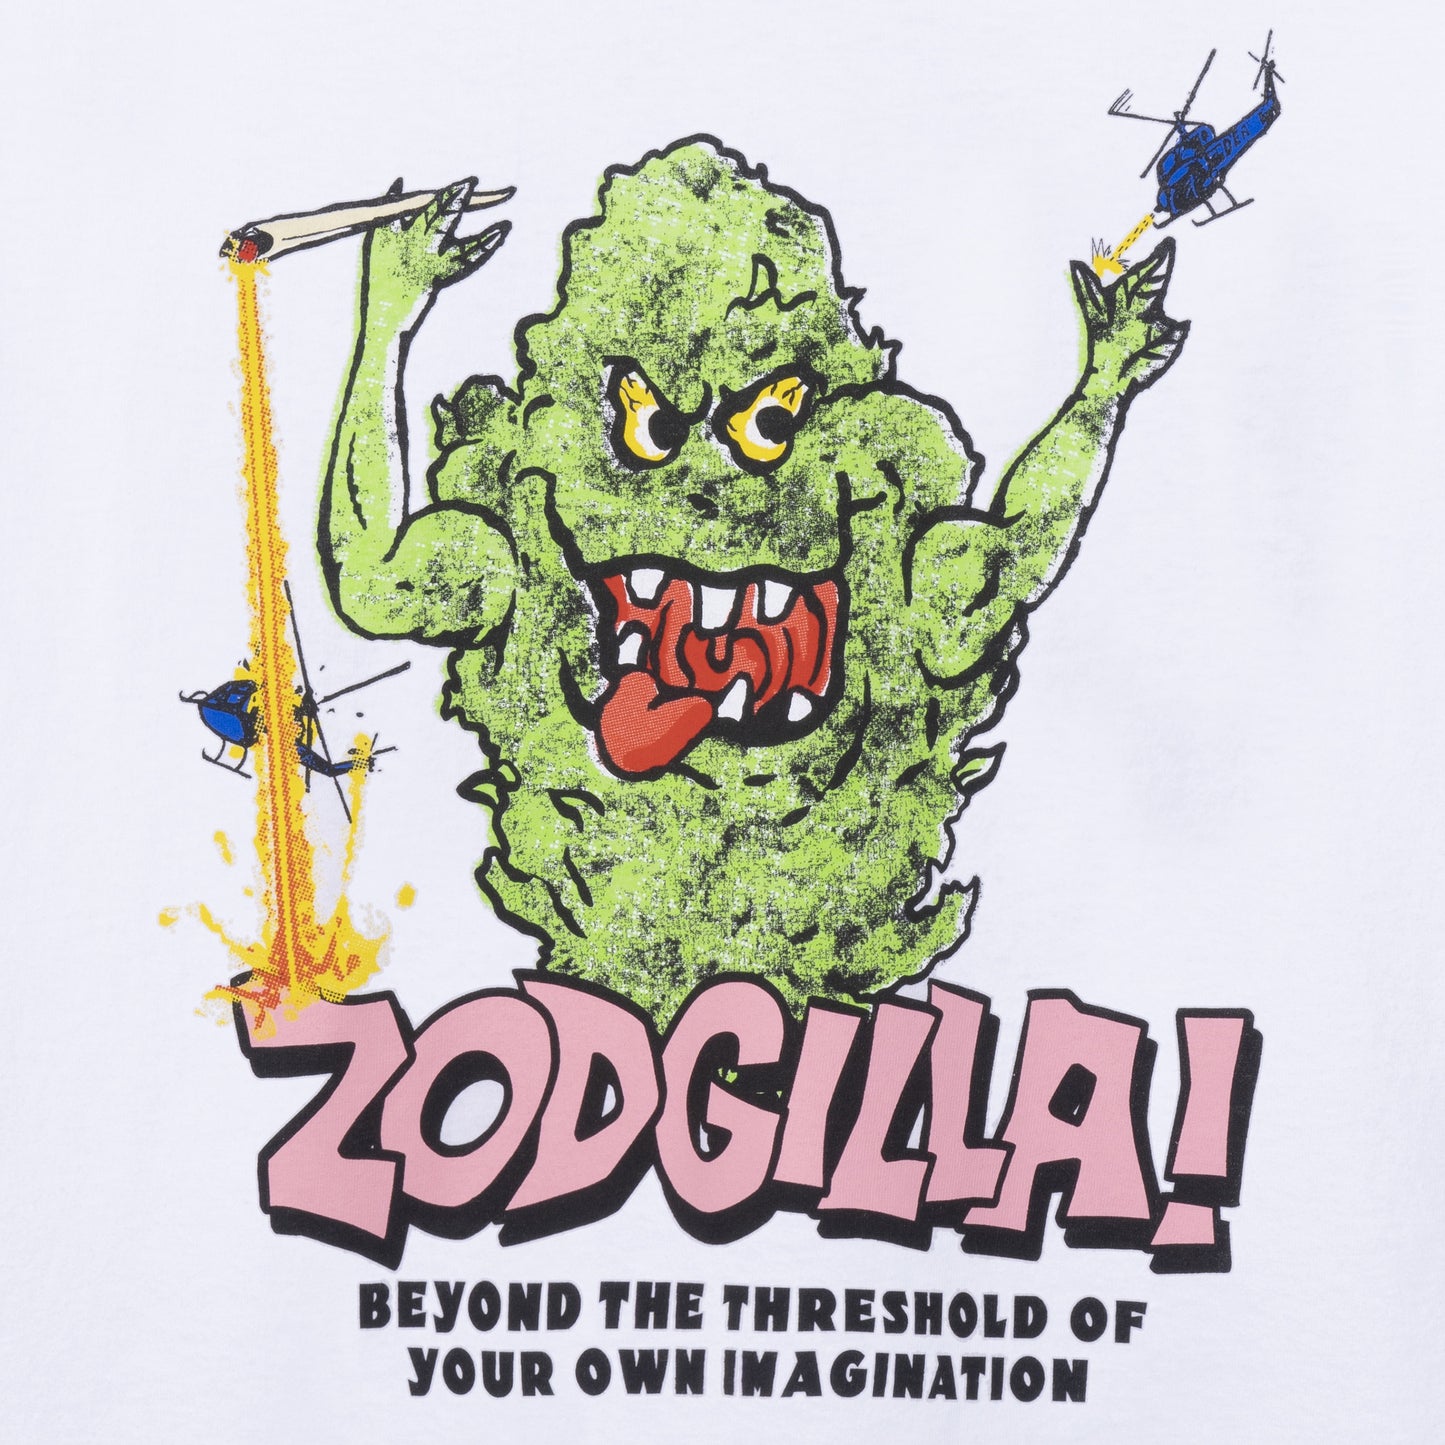 Real Bad Man Zodgilla! T-Shirt